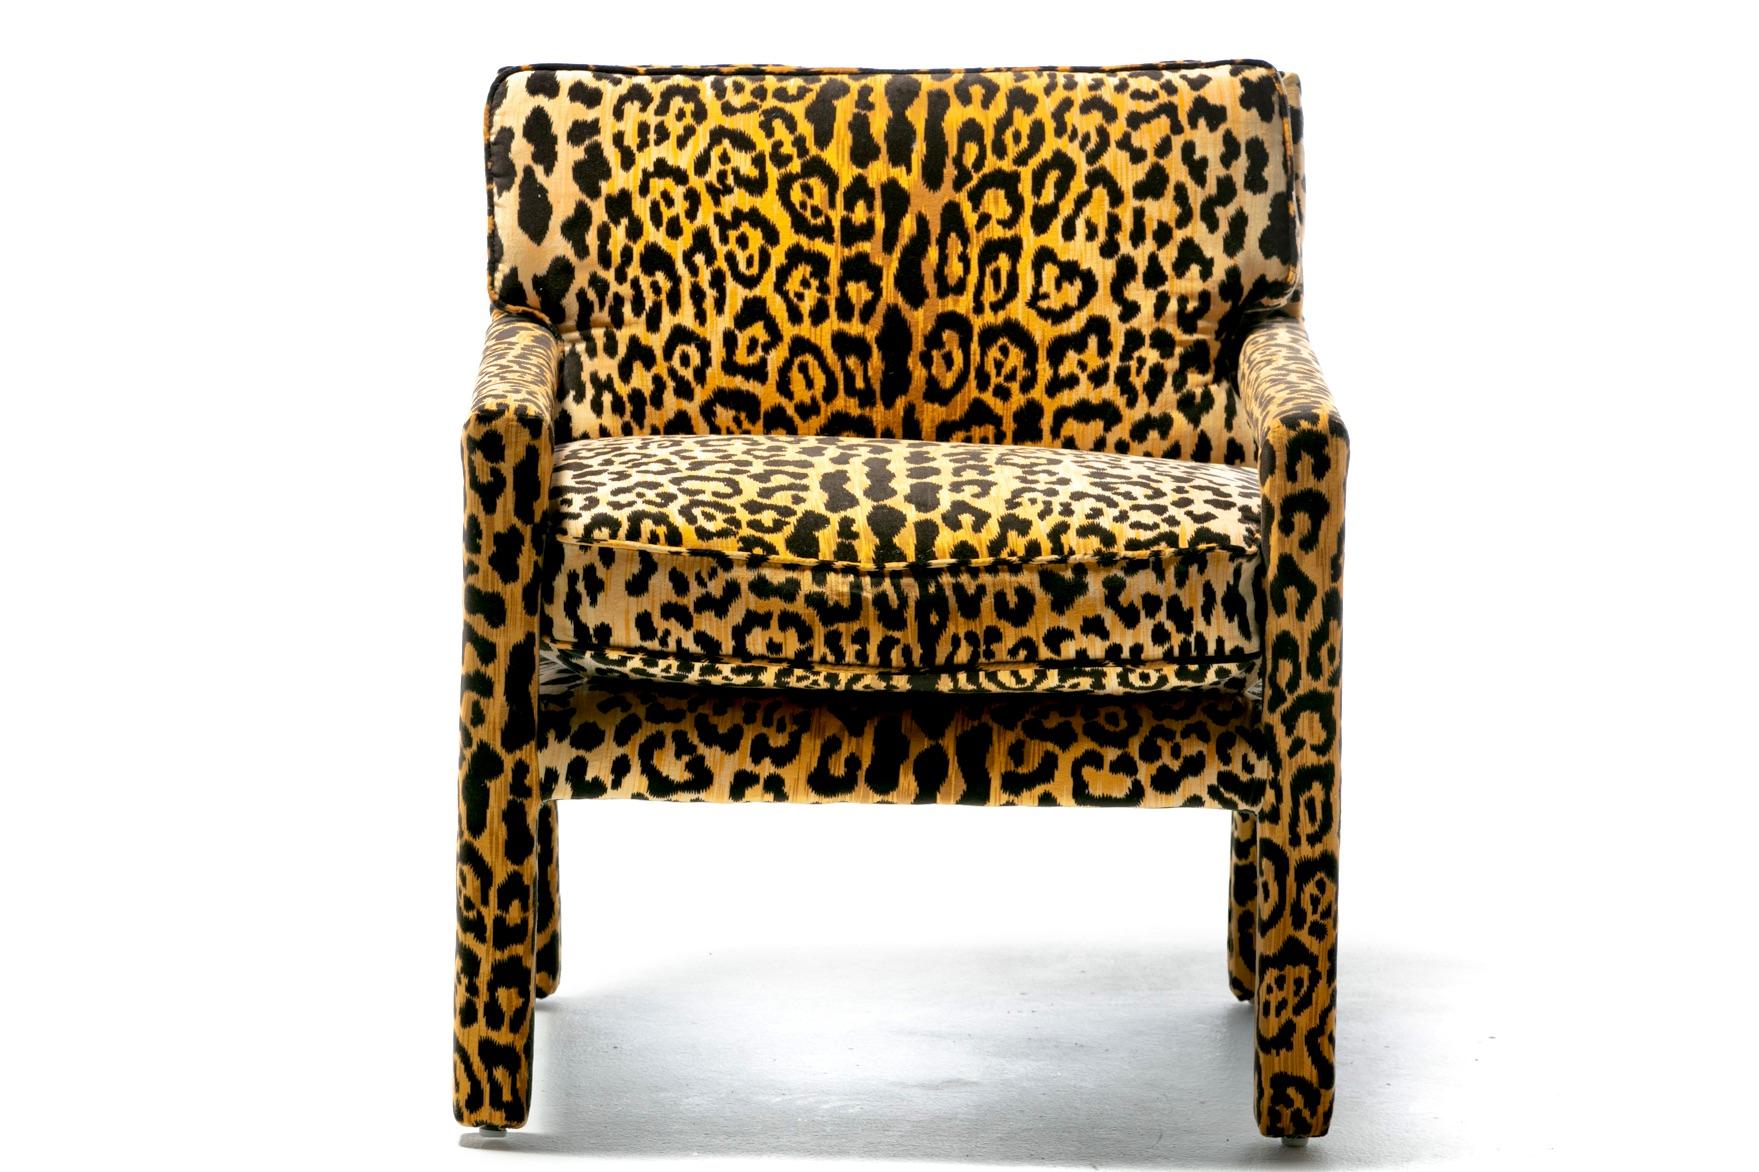 Chaise intemporelle de style Parsons de Milo fraîchement retapissée de velours léopard sexy et stylé. Les fauteuils Parsons sont uniques en ce sens que chaque surface est rembourrée - chaque centimètre de ce fauteuil est rembourré et couvert de